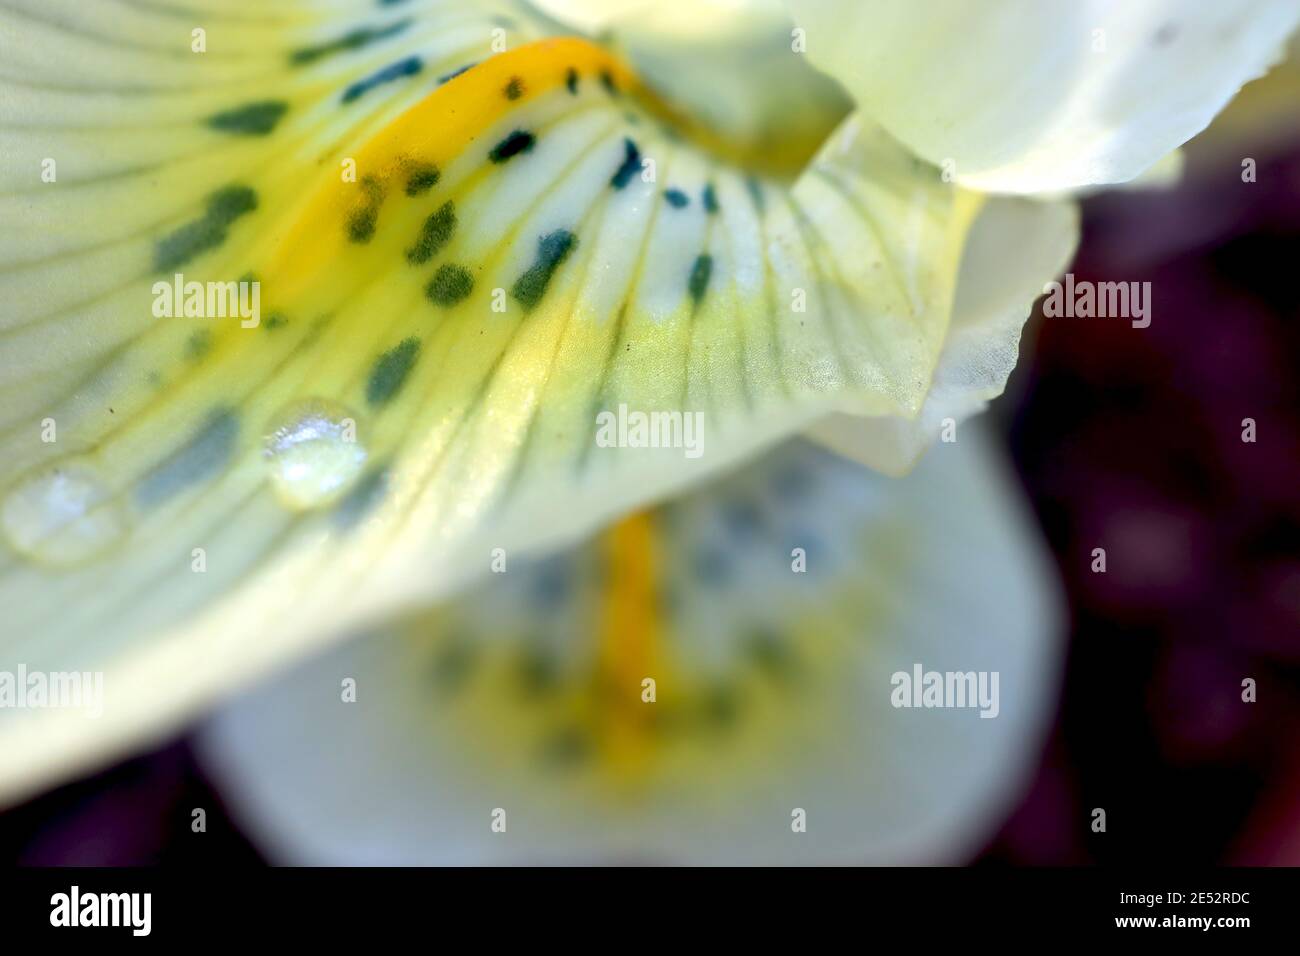 Iris reticulata «Or de Katherine» - iris nain jaune pâle avec freckles bleu foncé et côtes jaunes janvier, Angleterre, Royaume-Uni Banque D'Images